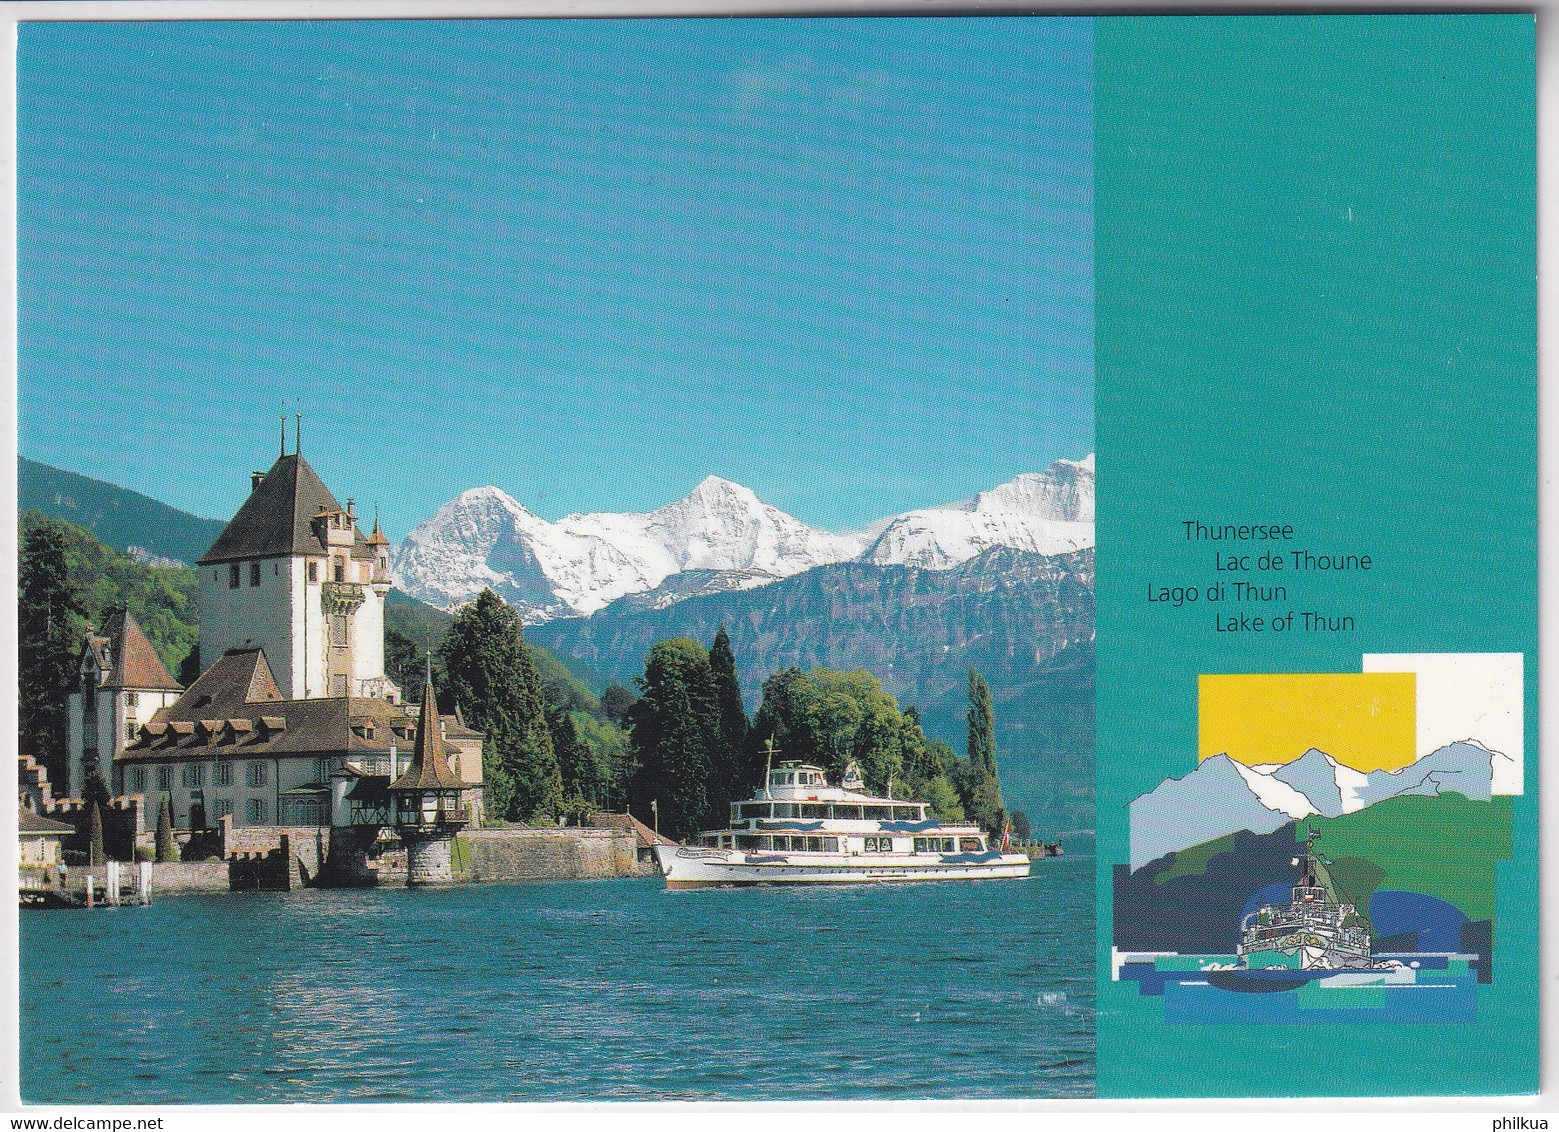 Suisse Ganzsache - Schiffahrt: Segelschiffe, Boote - Expédition: Voiliers, Bateaux - Shipping: Sailing Ships, Boats - Maritime